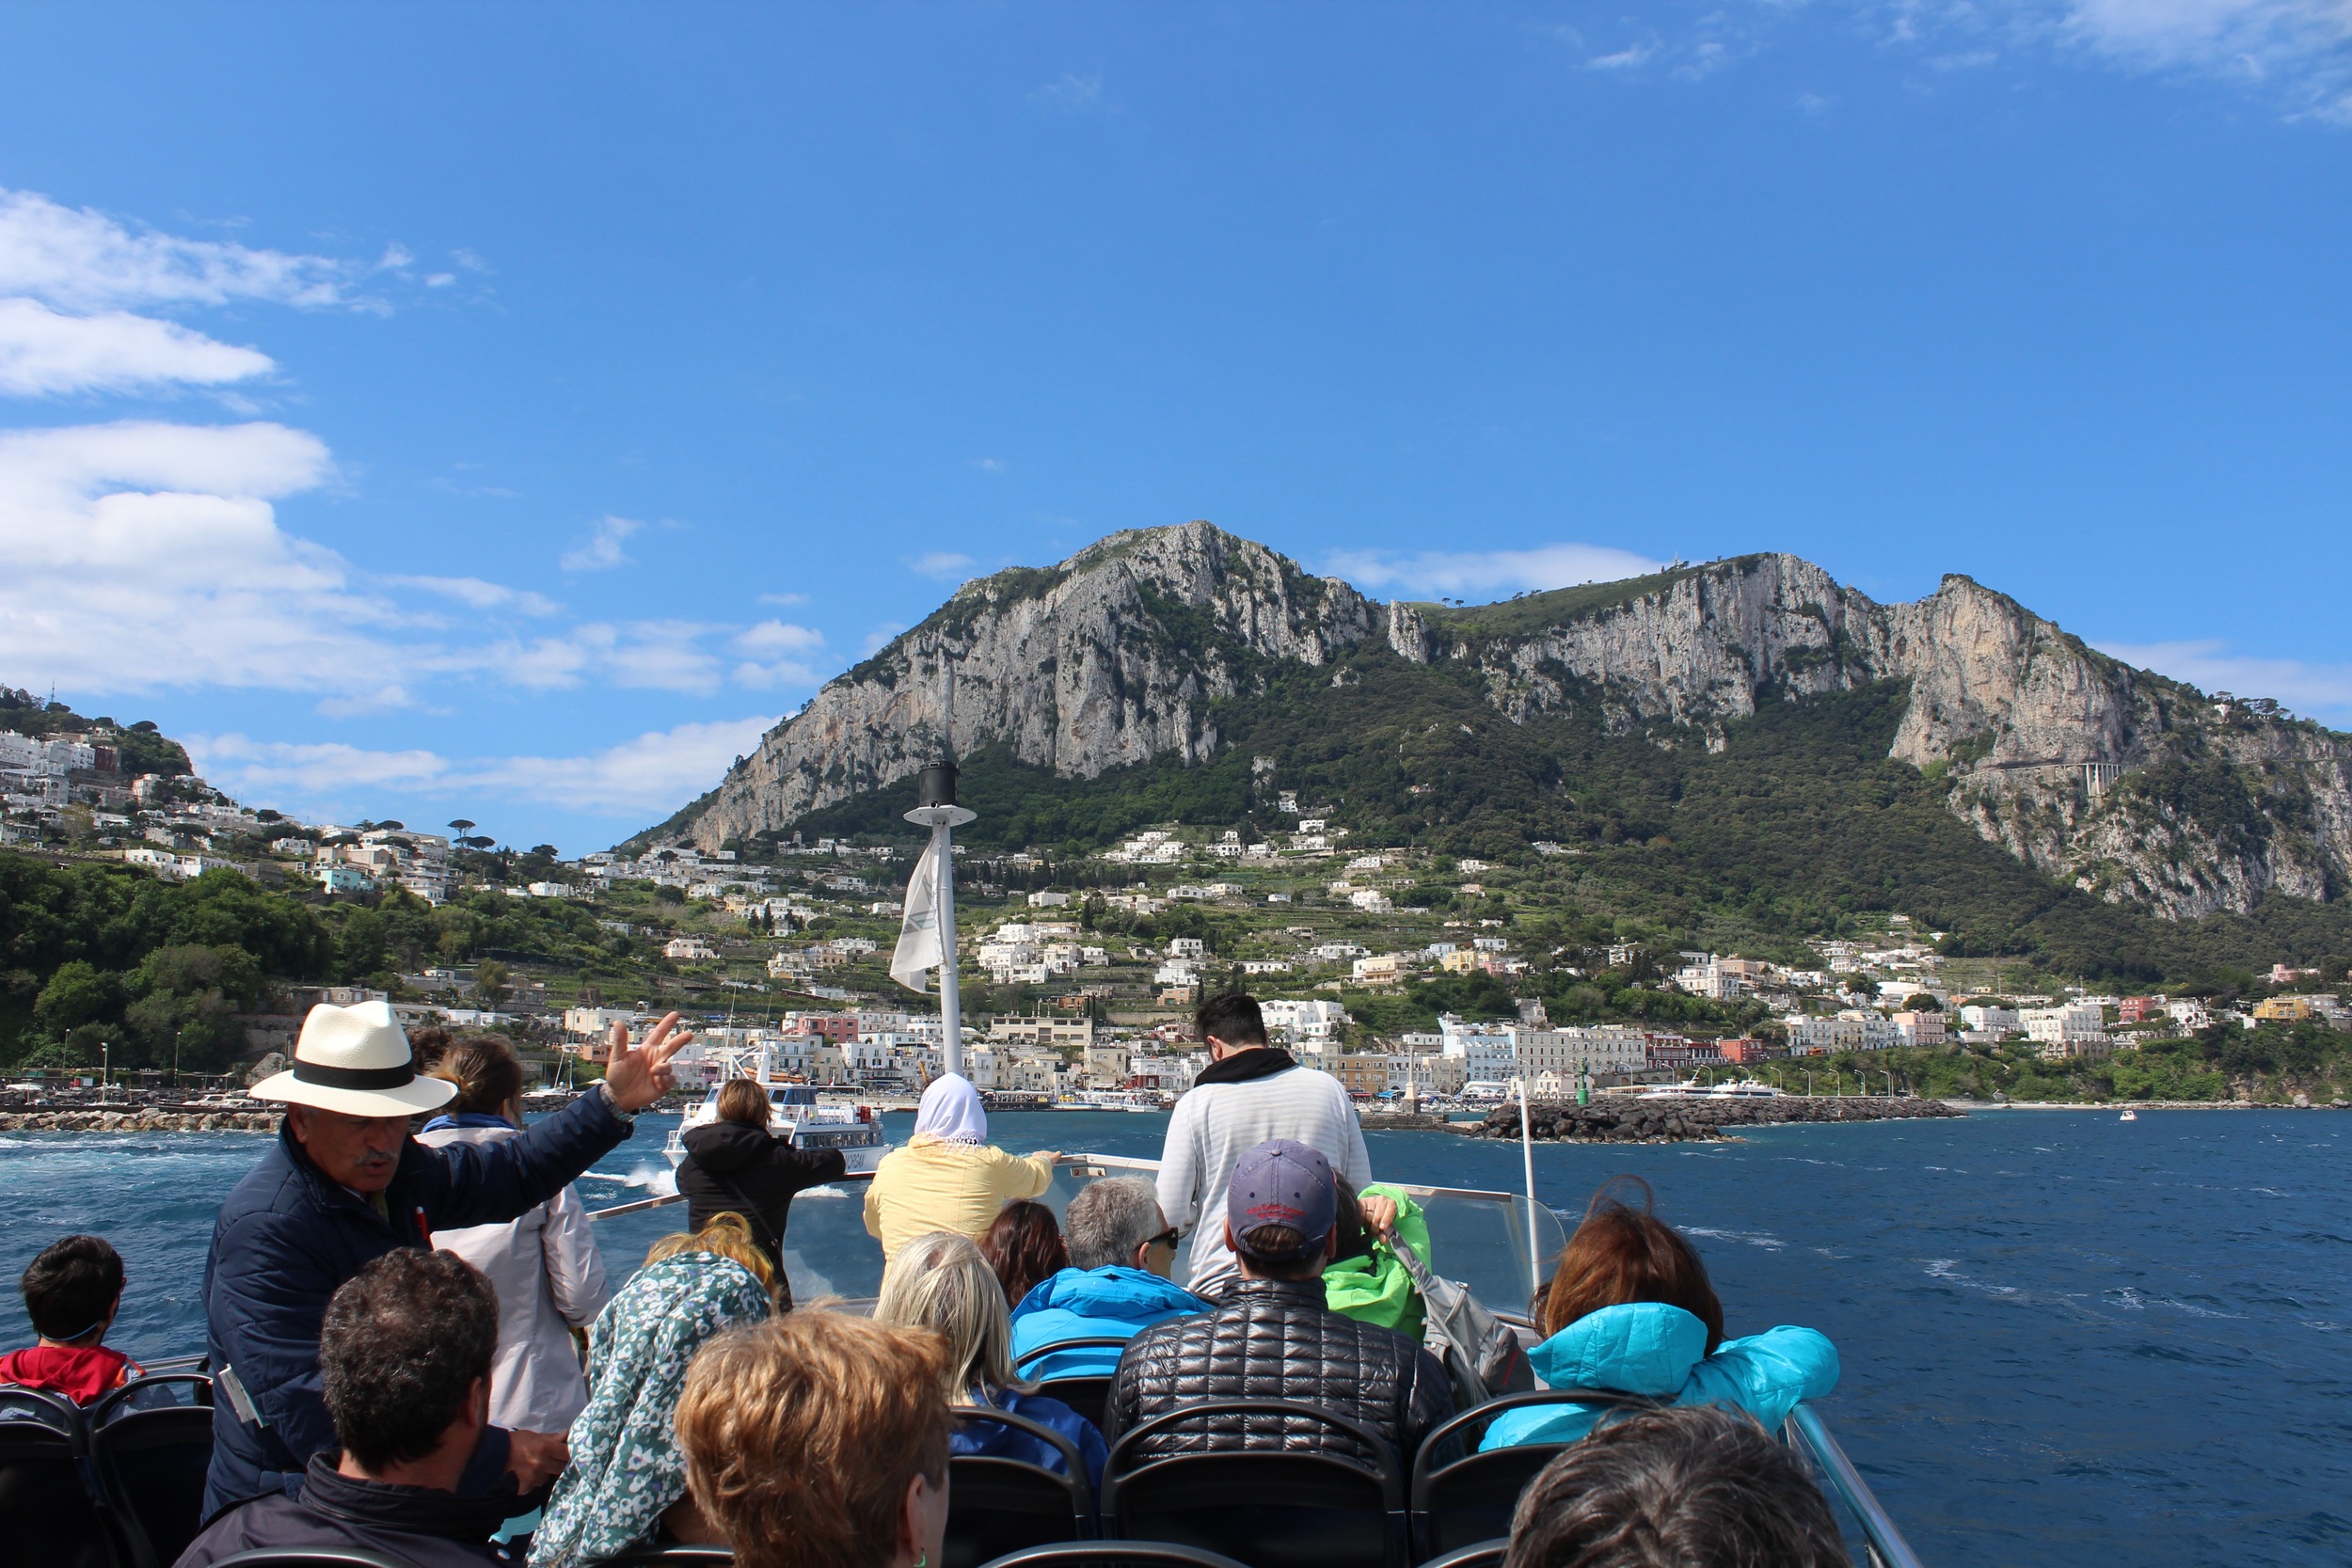 Day 3: Capri